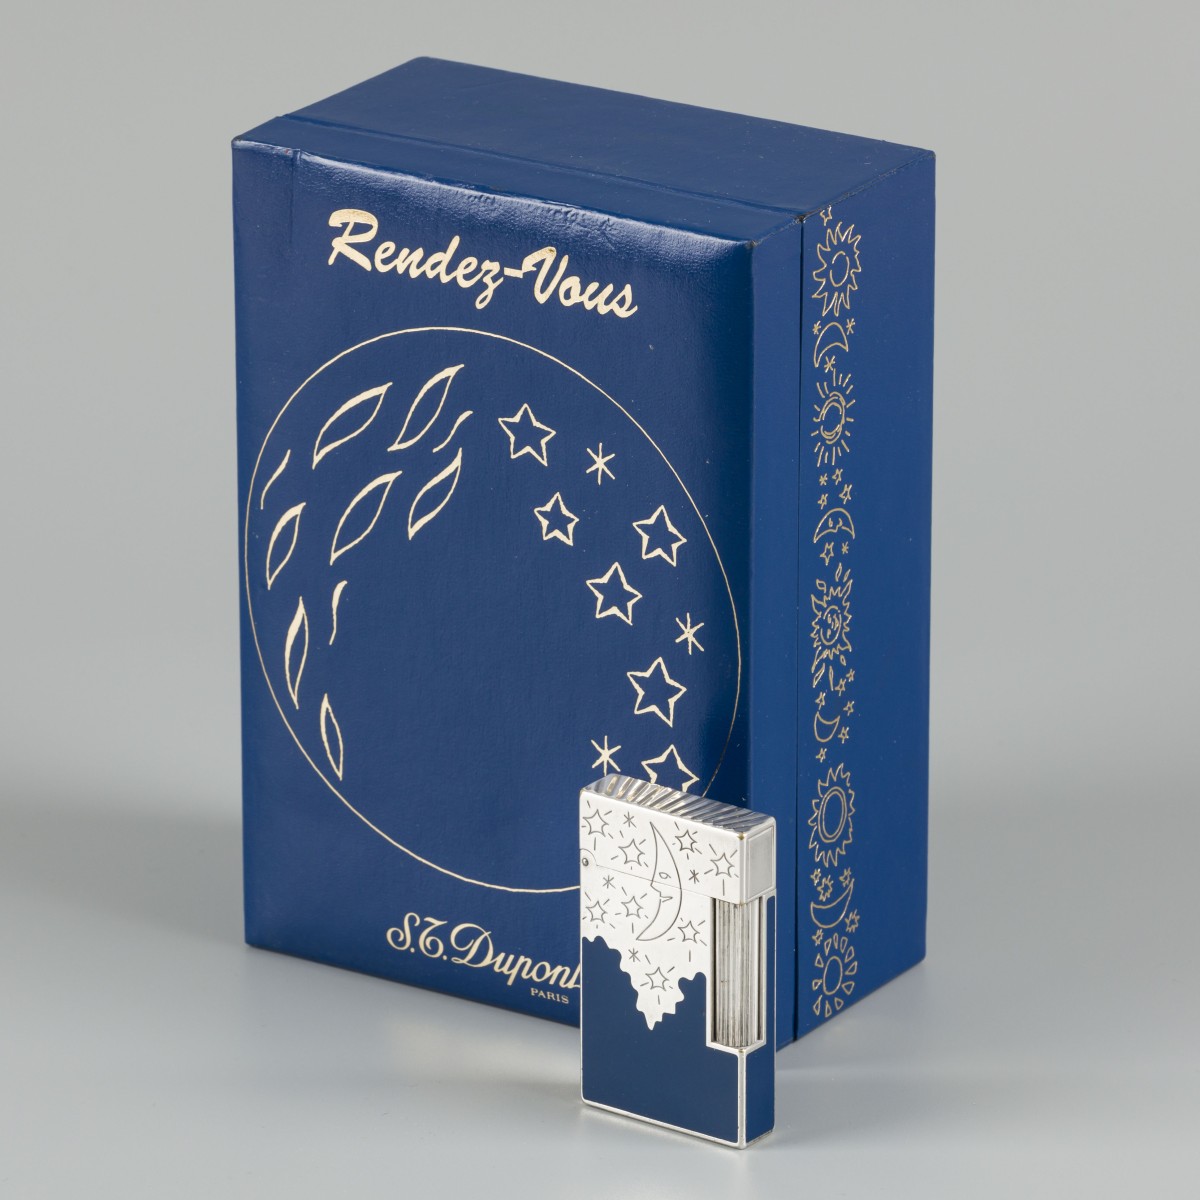 S.T. Dupont Rendez-Vous (Moon) aansteker met originele doos Limited Edition.